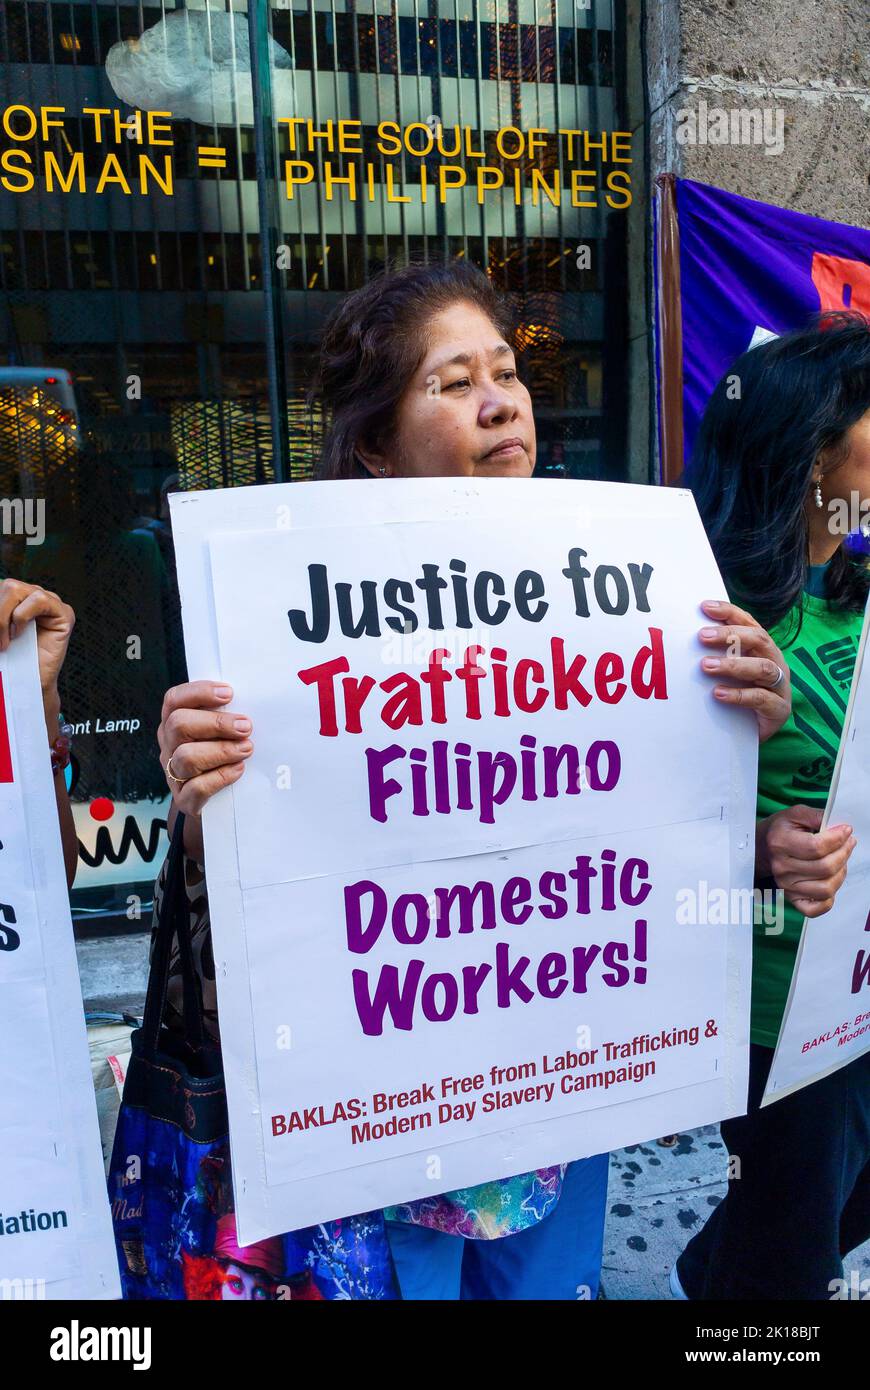 New York City, NY, USA, Groupe des femmes immigrées manifestant contre la traite des êtres humains des domestiques philippins, des femmes de ménage, tenant des panneaux de protestation sur la rue, nous discriminant, les femmes avec des panneaux Banque D'Images